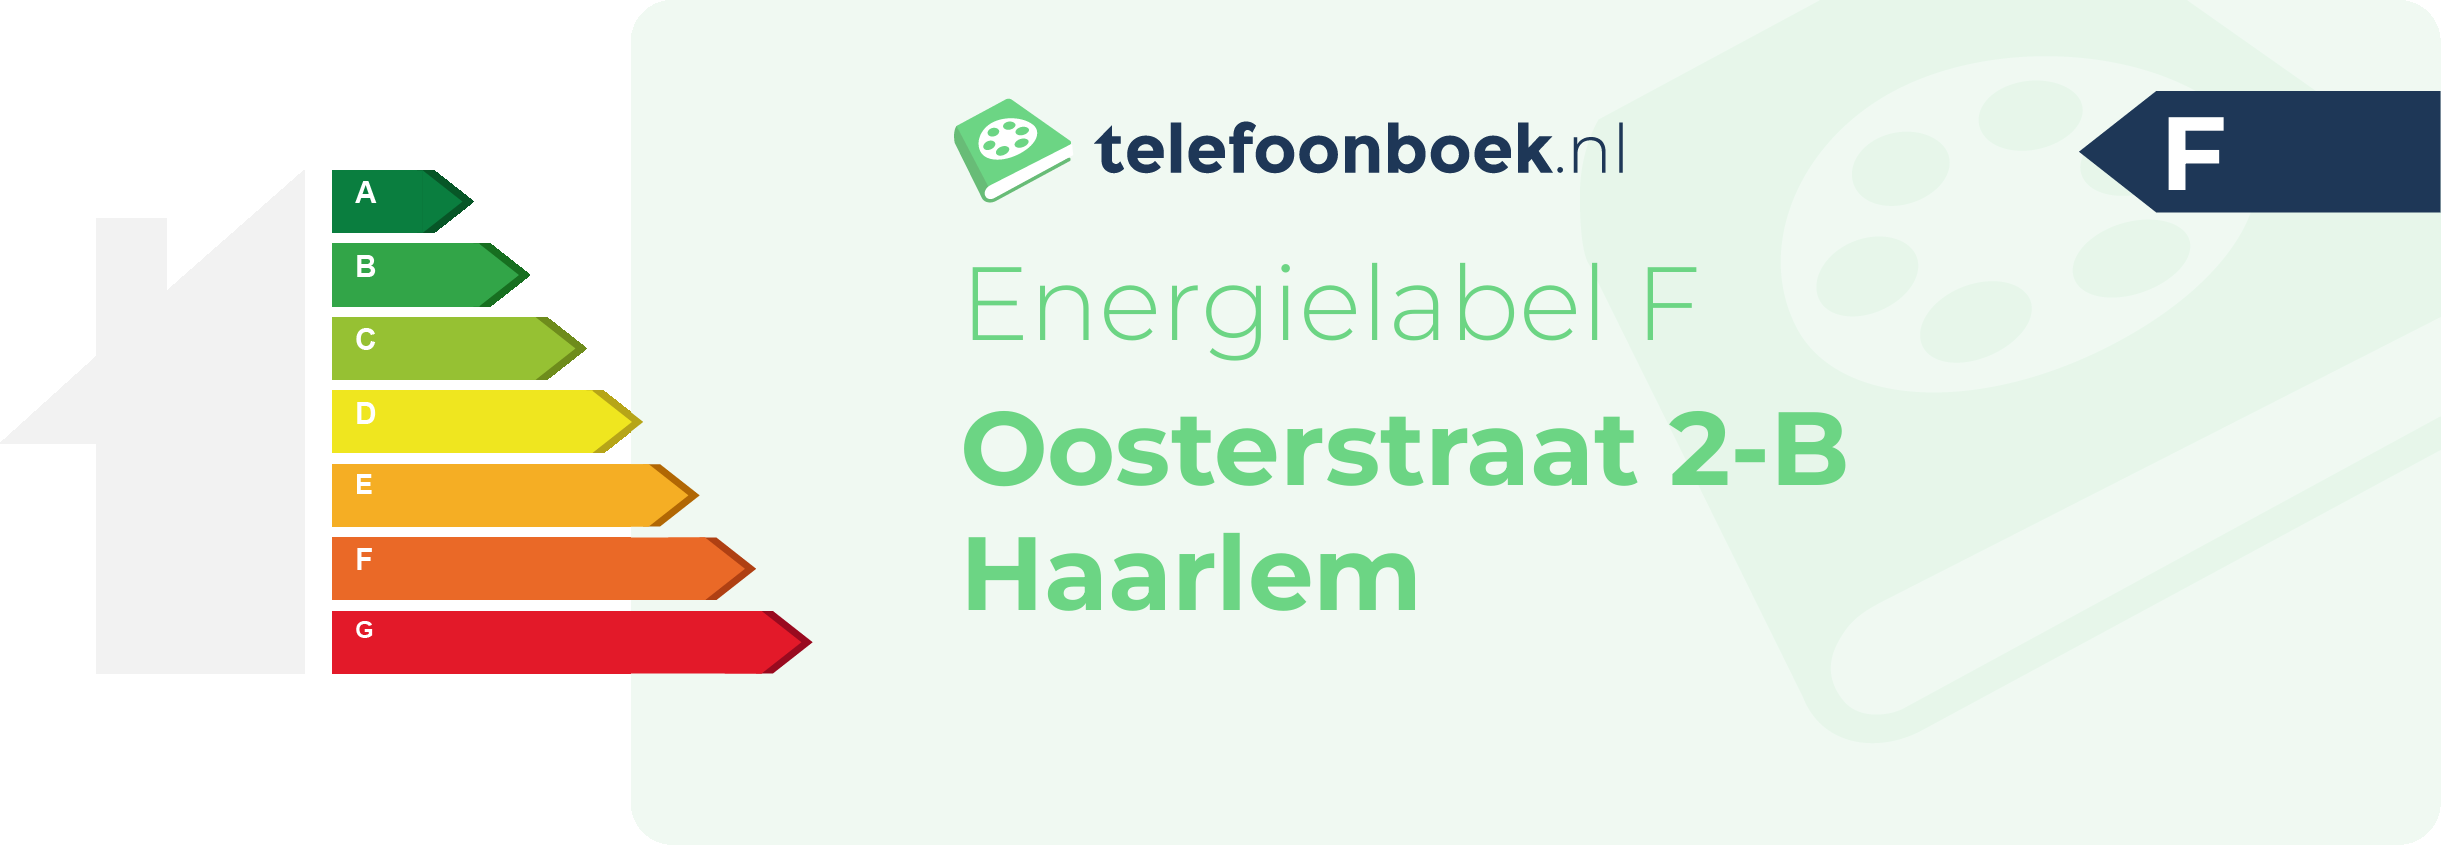 Energielabel Oosterstraat 2-B Haarlem